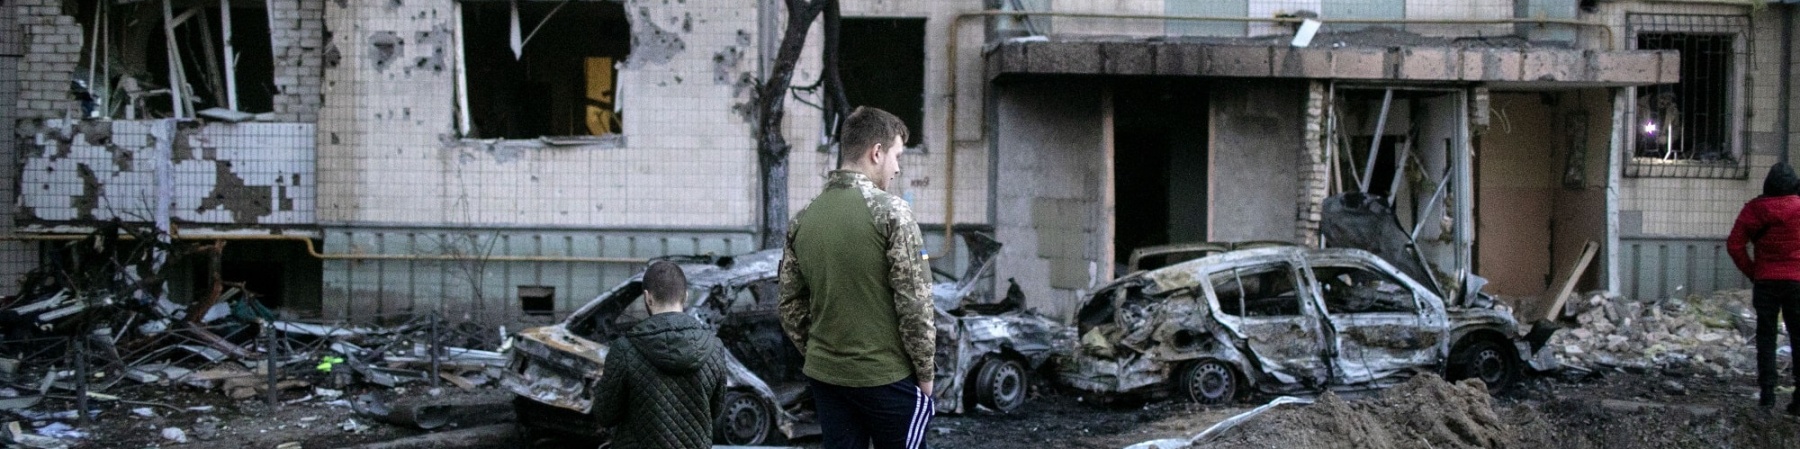 Ucraina, un bambino e un ragazzo in piedi di spalle davanti a edifici e macchine distrutti e in macerie a causa dei bombardamenti